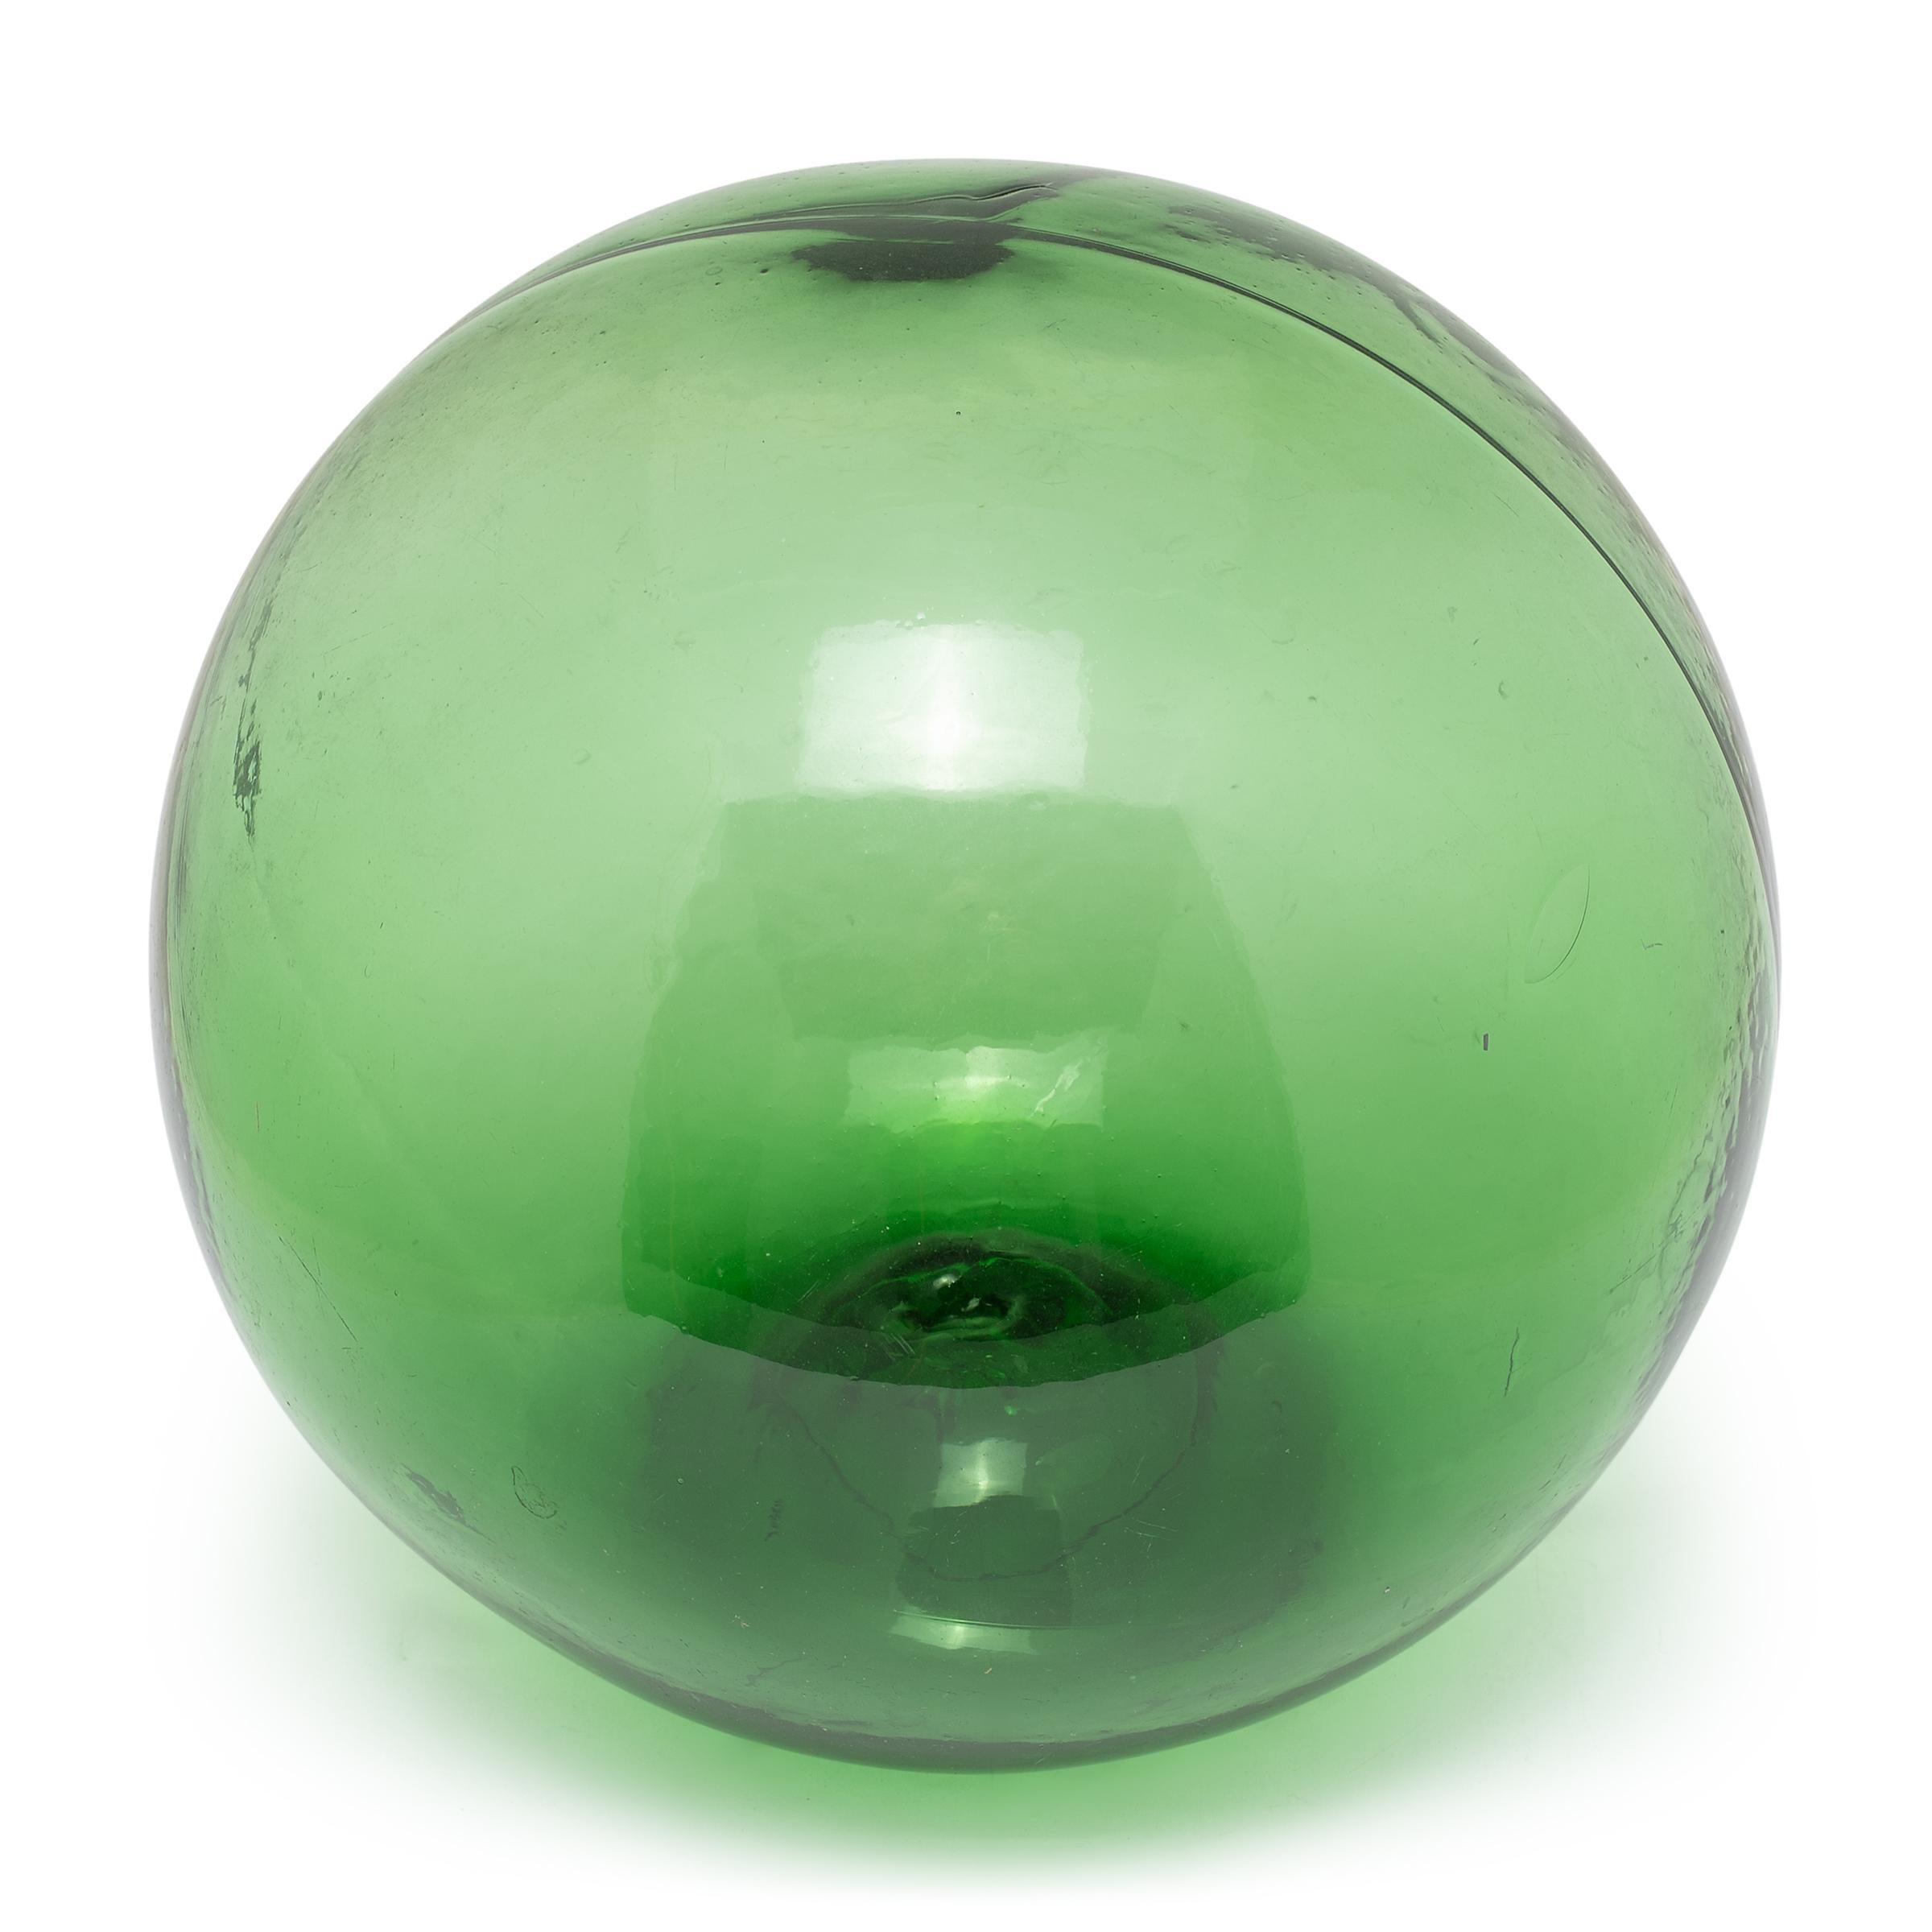 Diese schöne grüne Kugel ist ein Glasschwimmer aus dem frühen 20. Jahrhundert, der von Fischern benutzt wurde, um ihre Netze oder Leinen im Meer schwimmen zu lassen. Der hohle Schwimmer wäre von einem Seilgeflecht umhüllt und wie eine moderne Boje